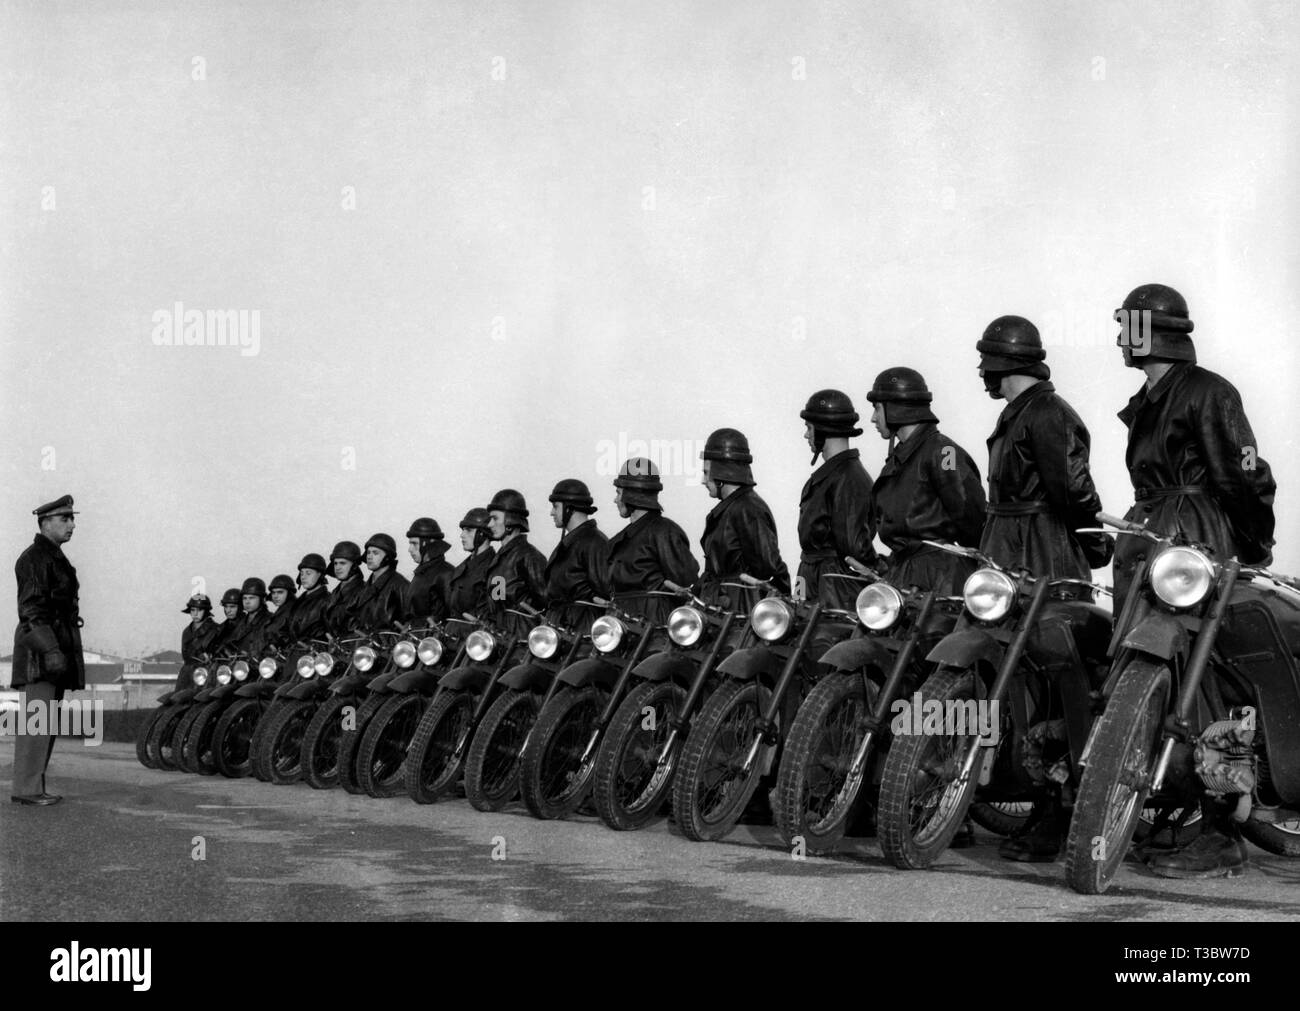 Les élèves de l'Académie militaire de Modène, motocyclistes, 1964 Banque D'Images